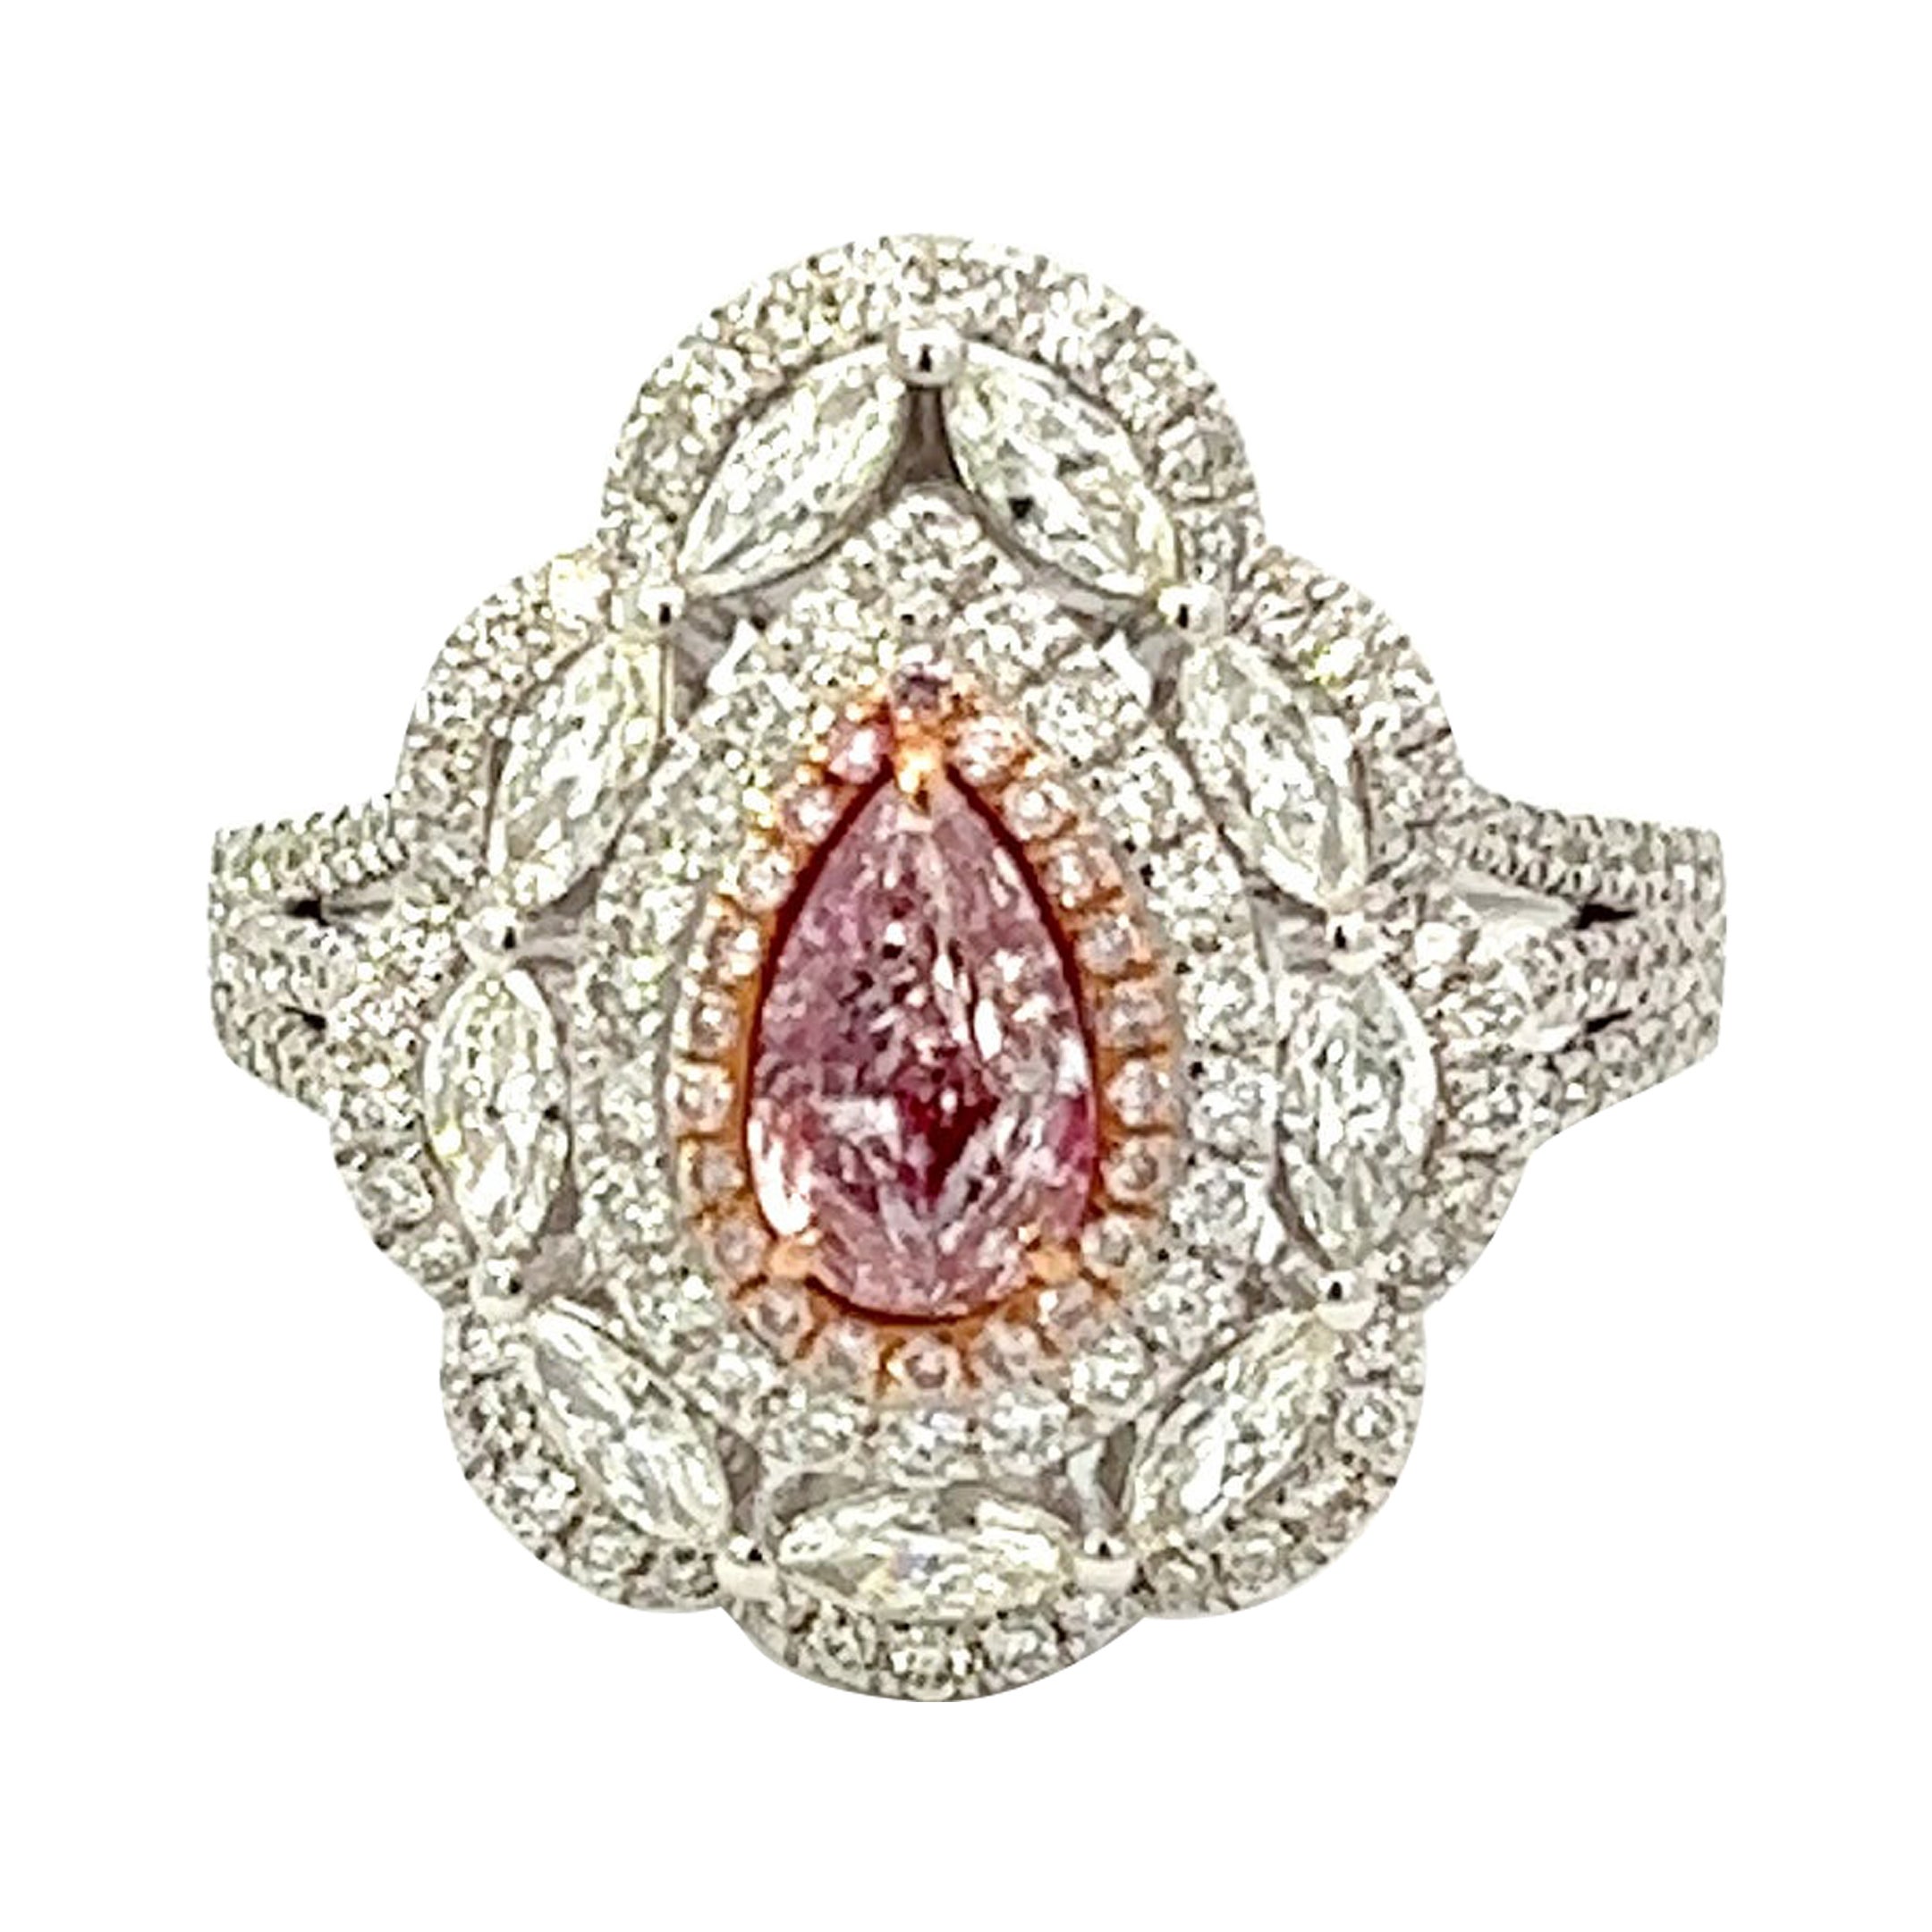 GIA Certified 0.54 Carat Fancy Light Pink Diamond Ring